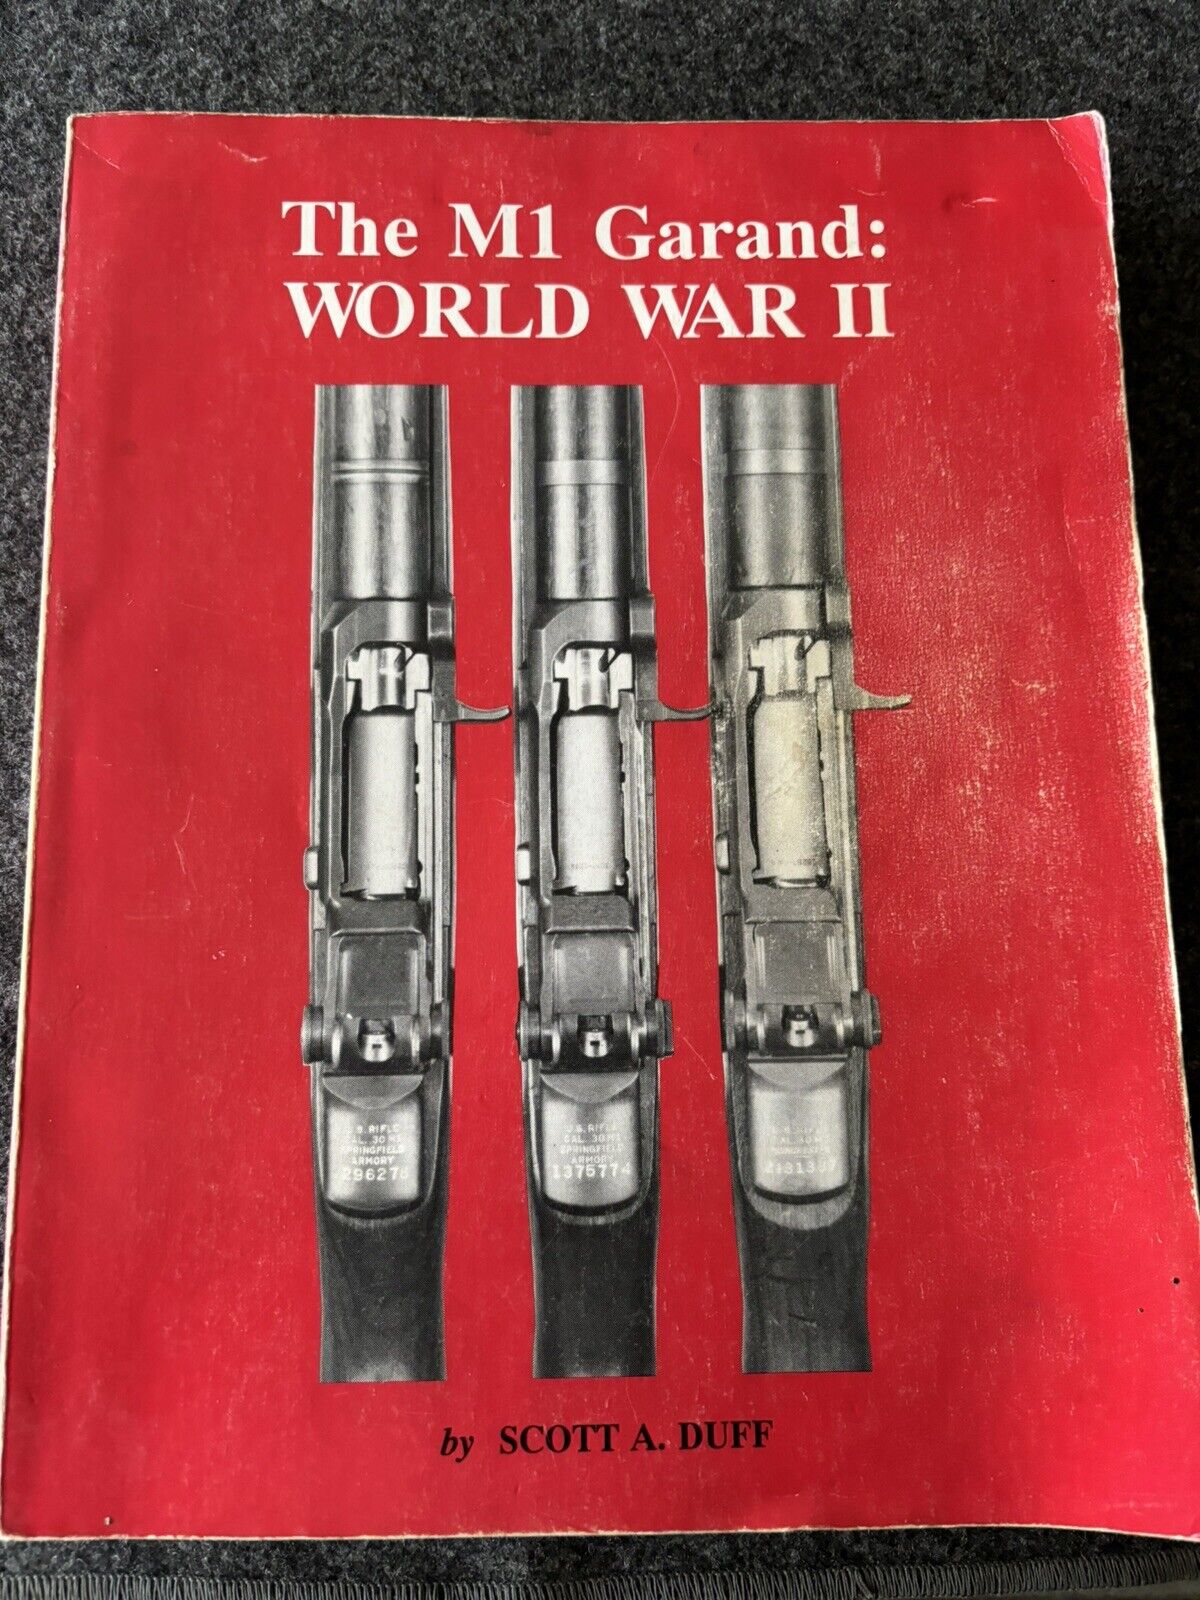 The M1 Garand: World War II, 1st Edition, by Scott A. Duff